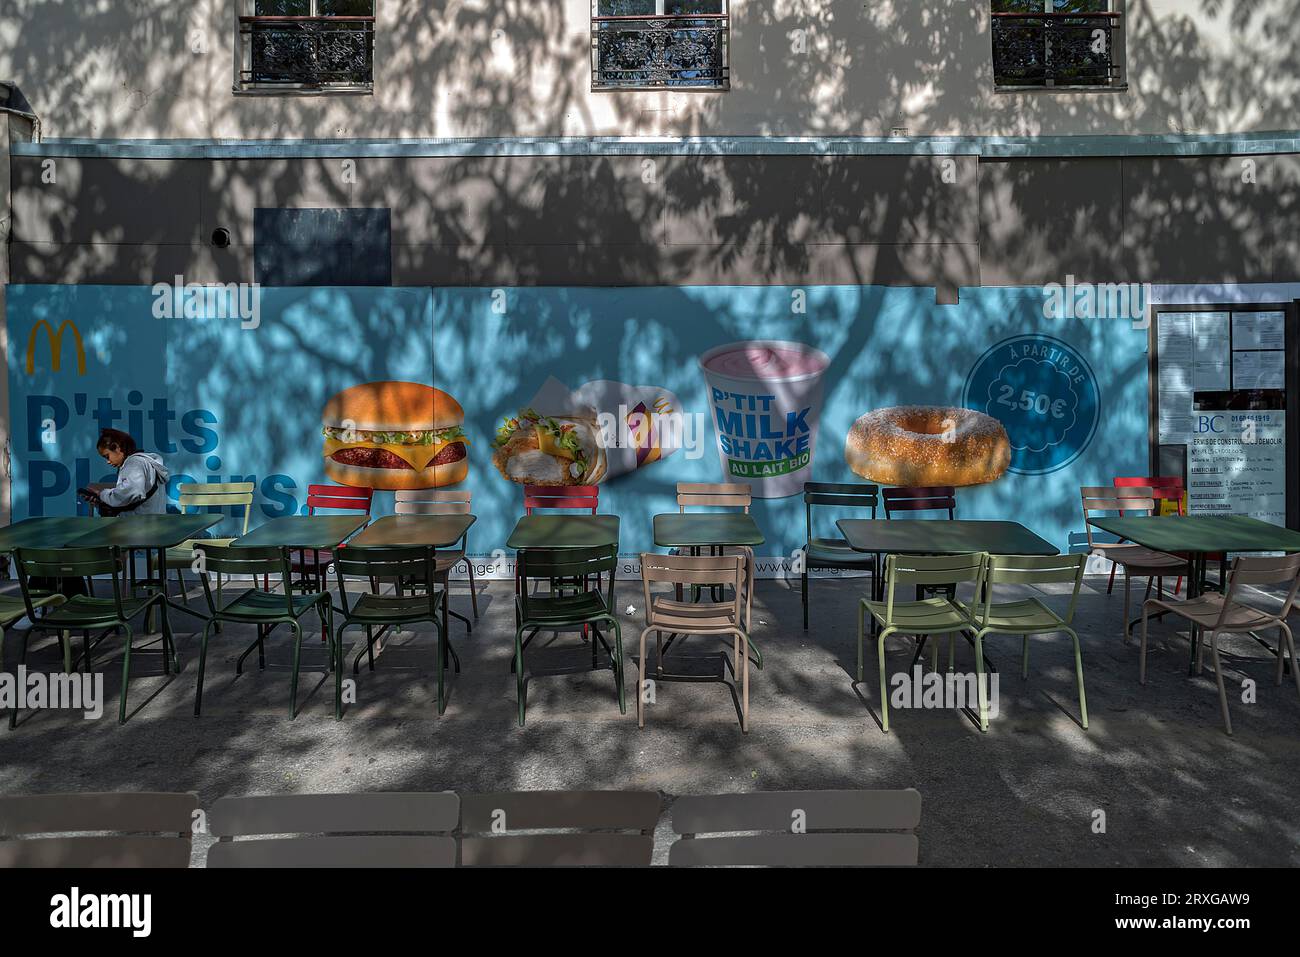 Poster mit Werbung für ein Fast-Food-Restaurant, Tische und Stühle davor, Paris, Frankreich Stockfoto